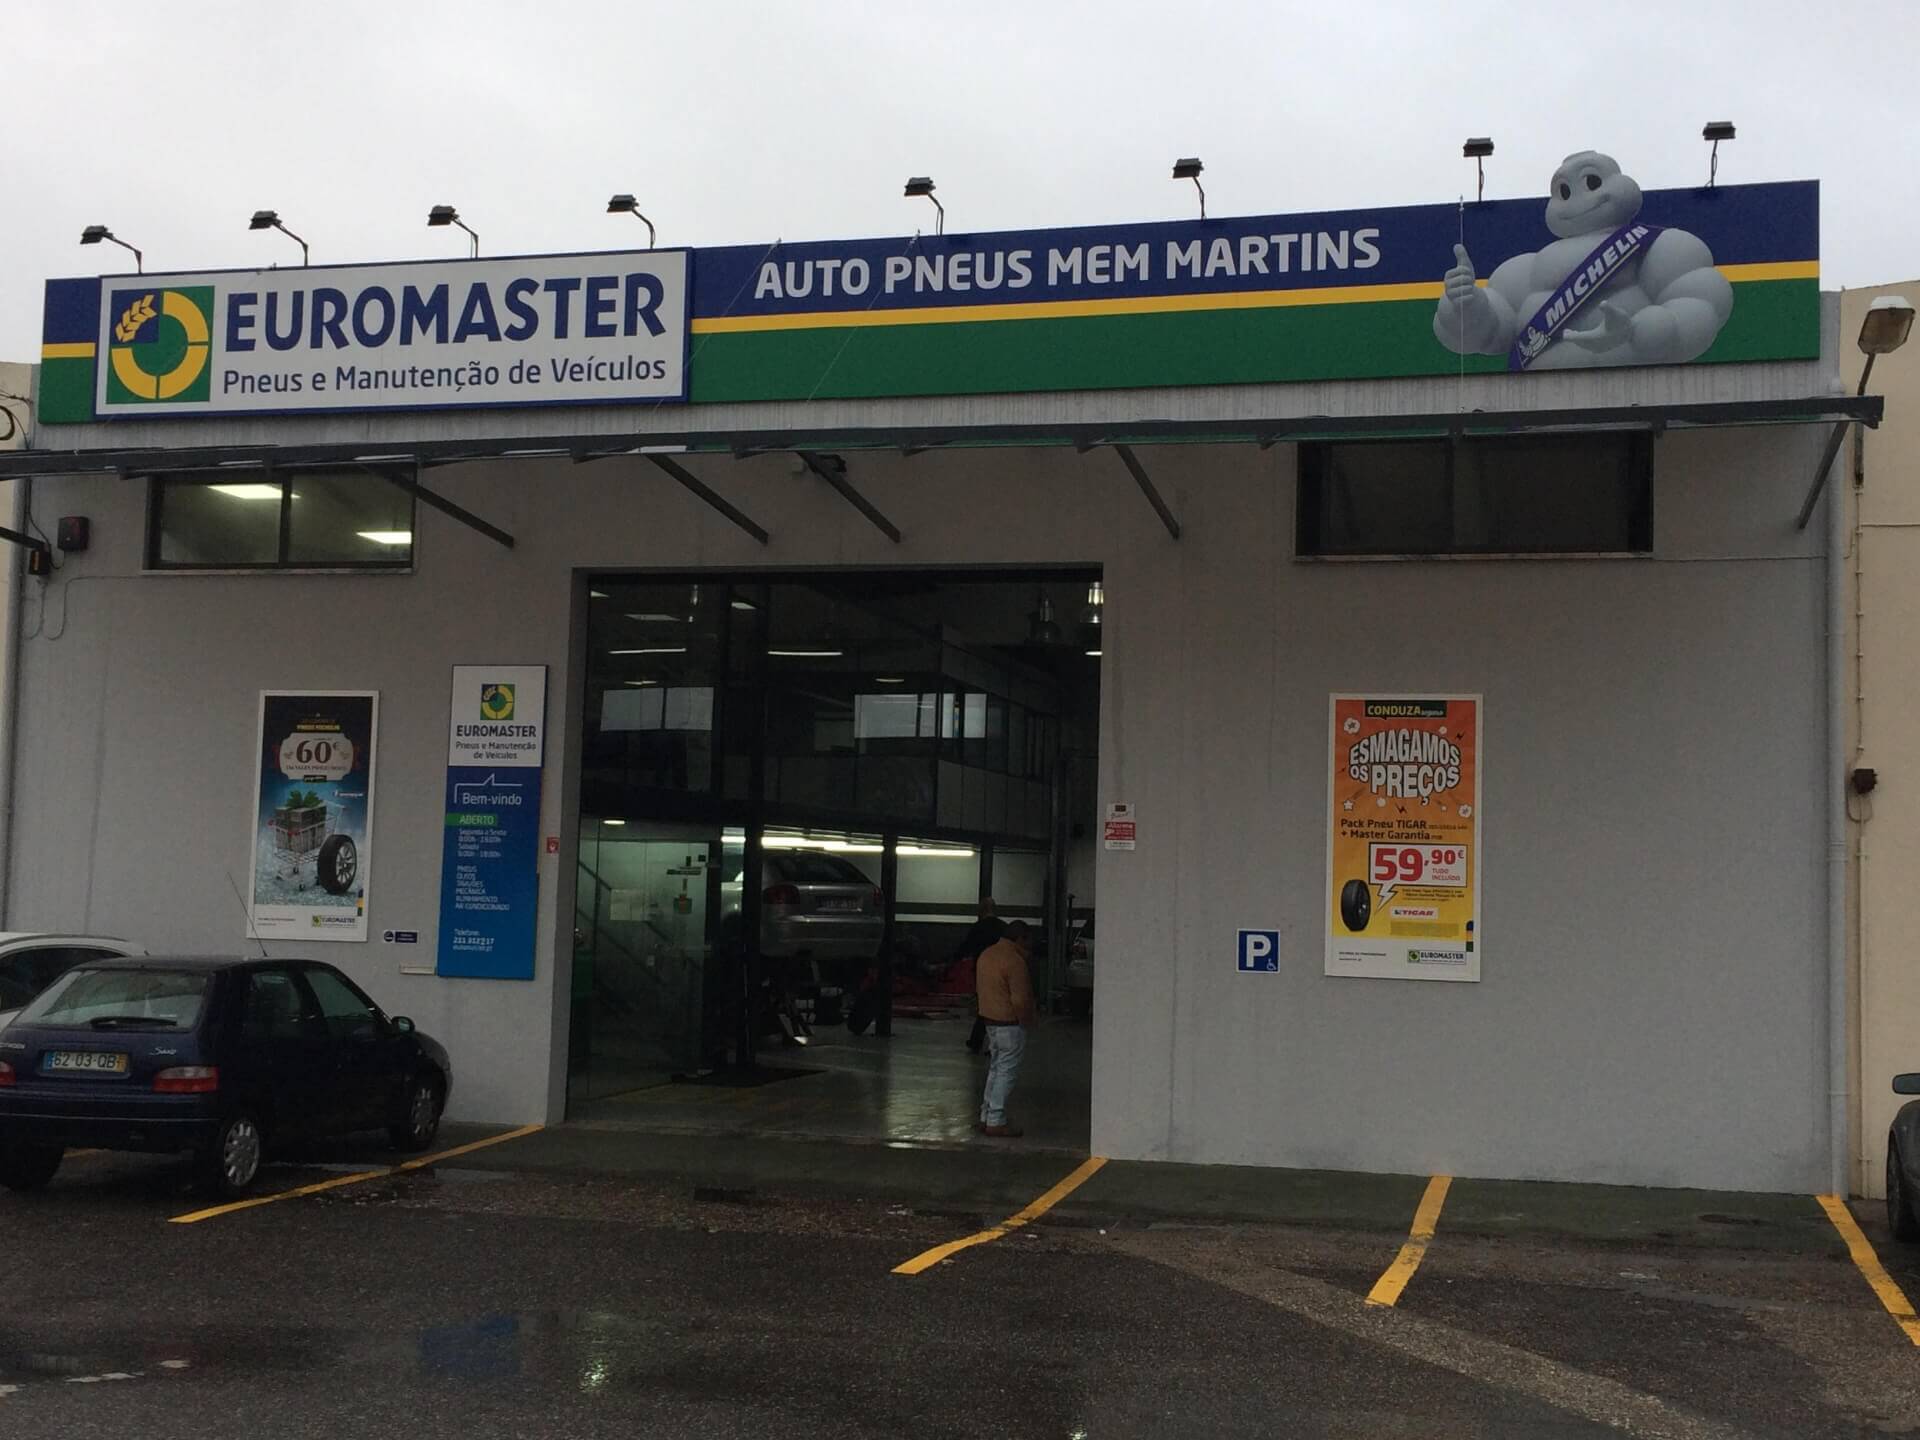 Euromaster Auto Pneus Mem Martins